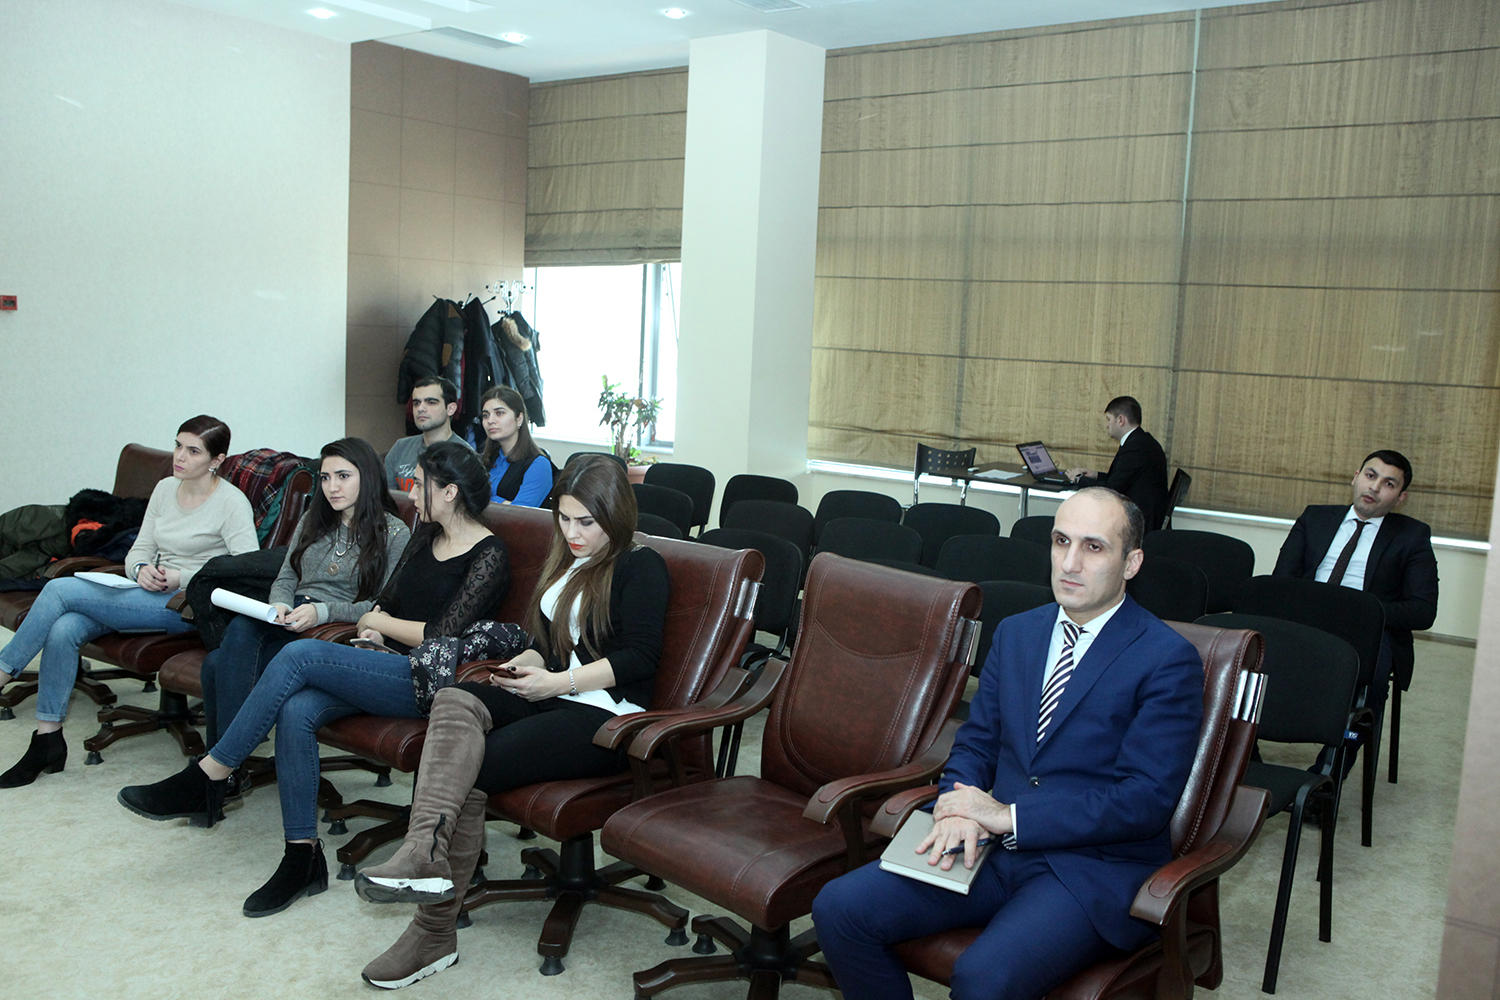 На повышение пенсий и соцпособий в Азербайджане будет направлено 200 млн манатов - министр (ФОТО)